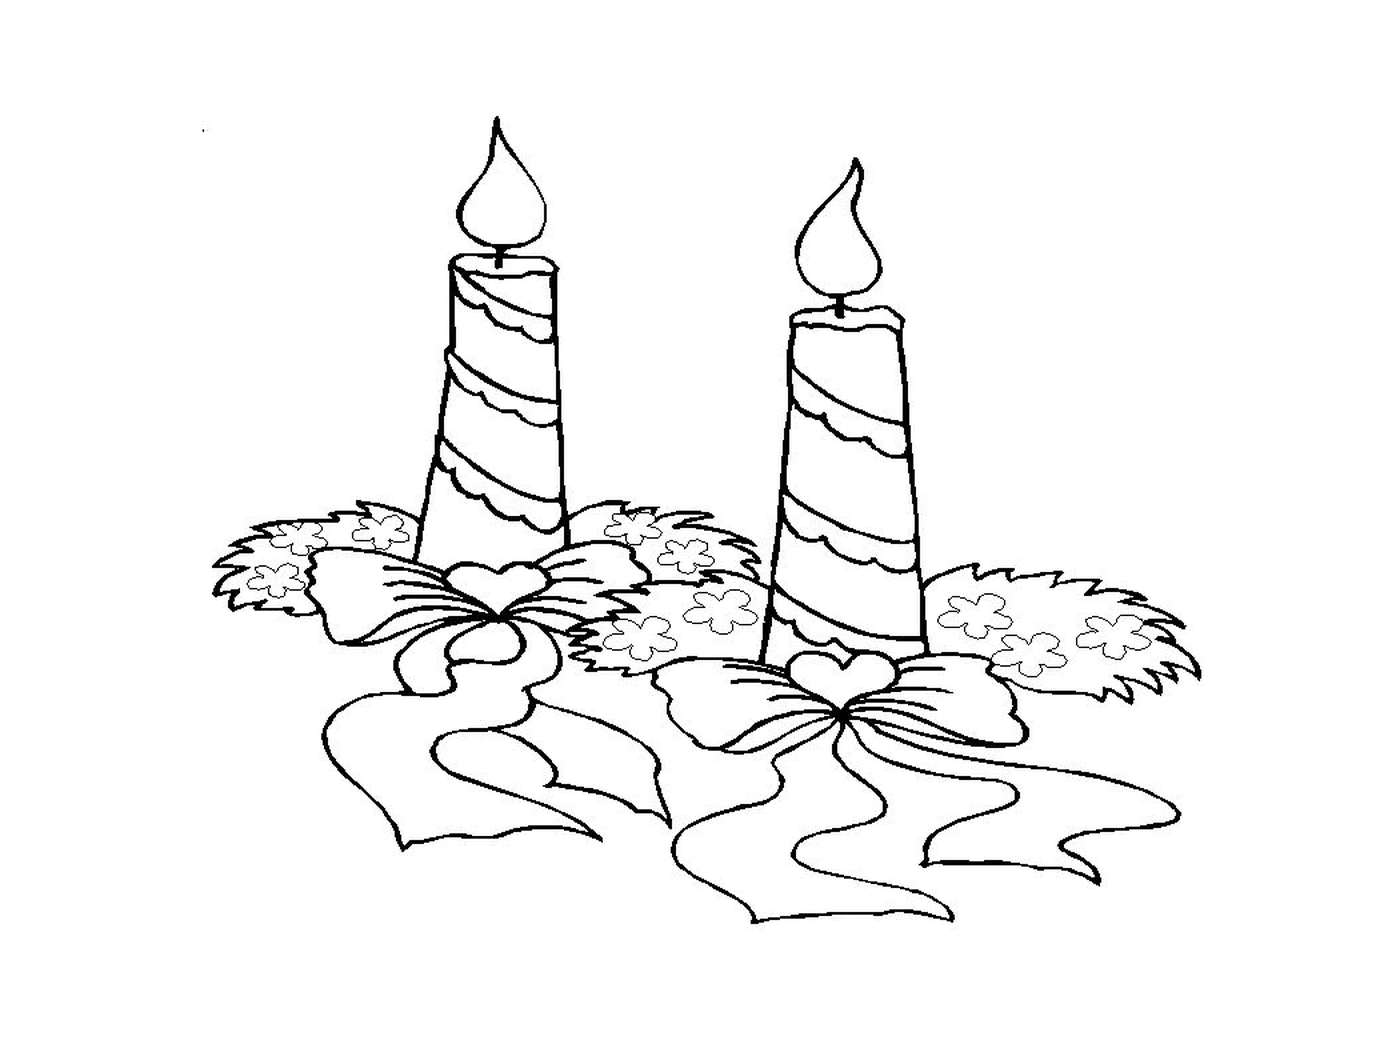  Dos velas encendidas colocadas en el suelo 